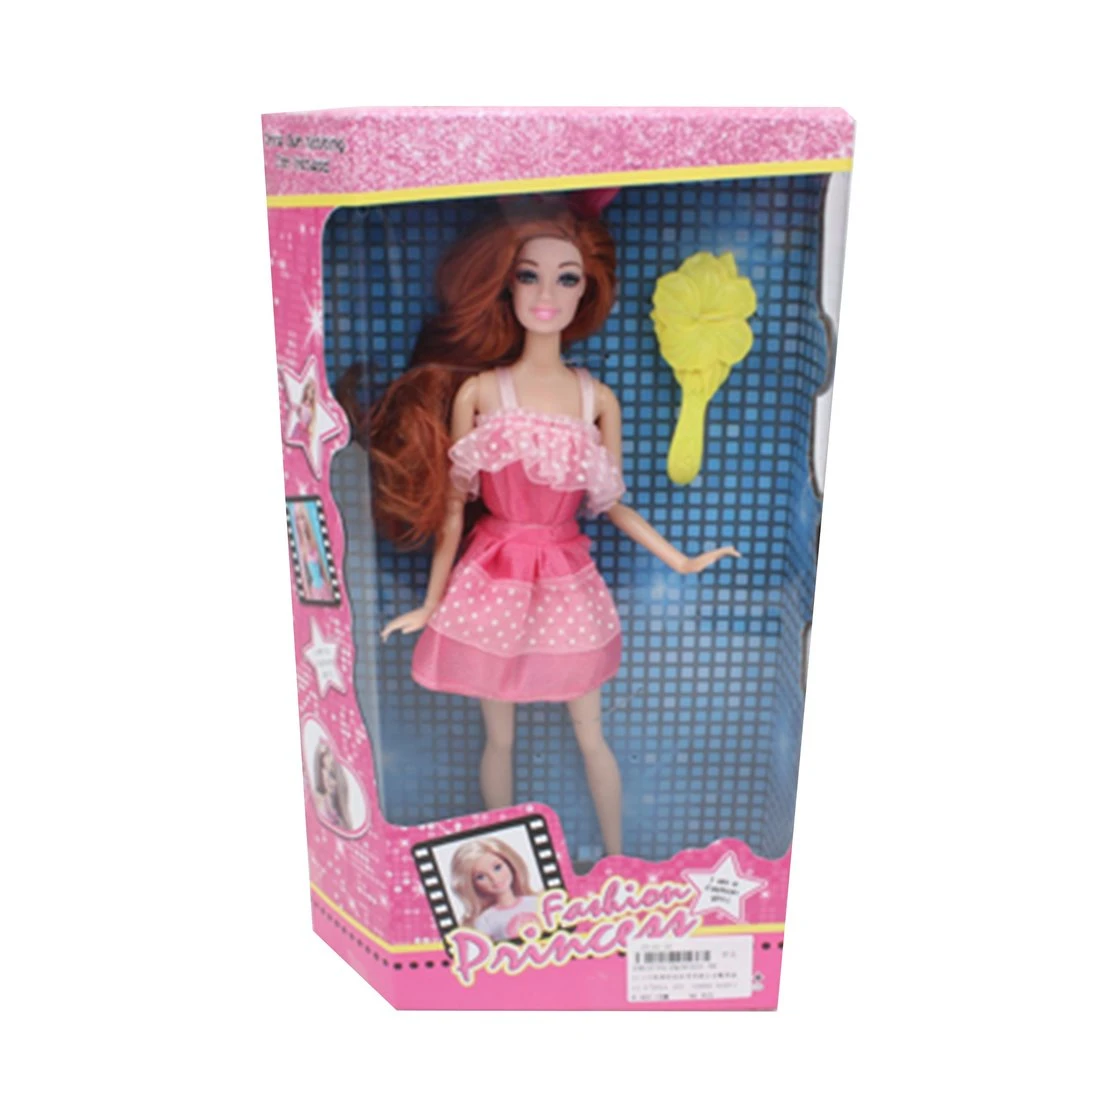 Игровой набор "Модница", в комплекте: кукла 30см, предметов 2шт.